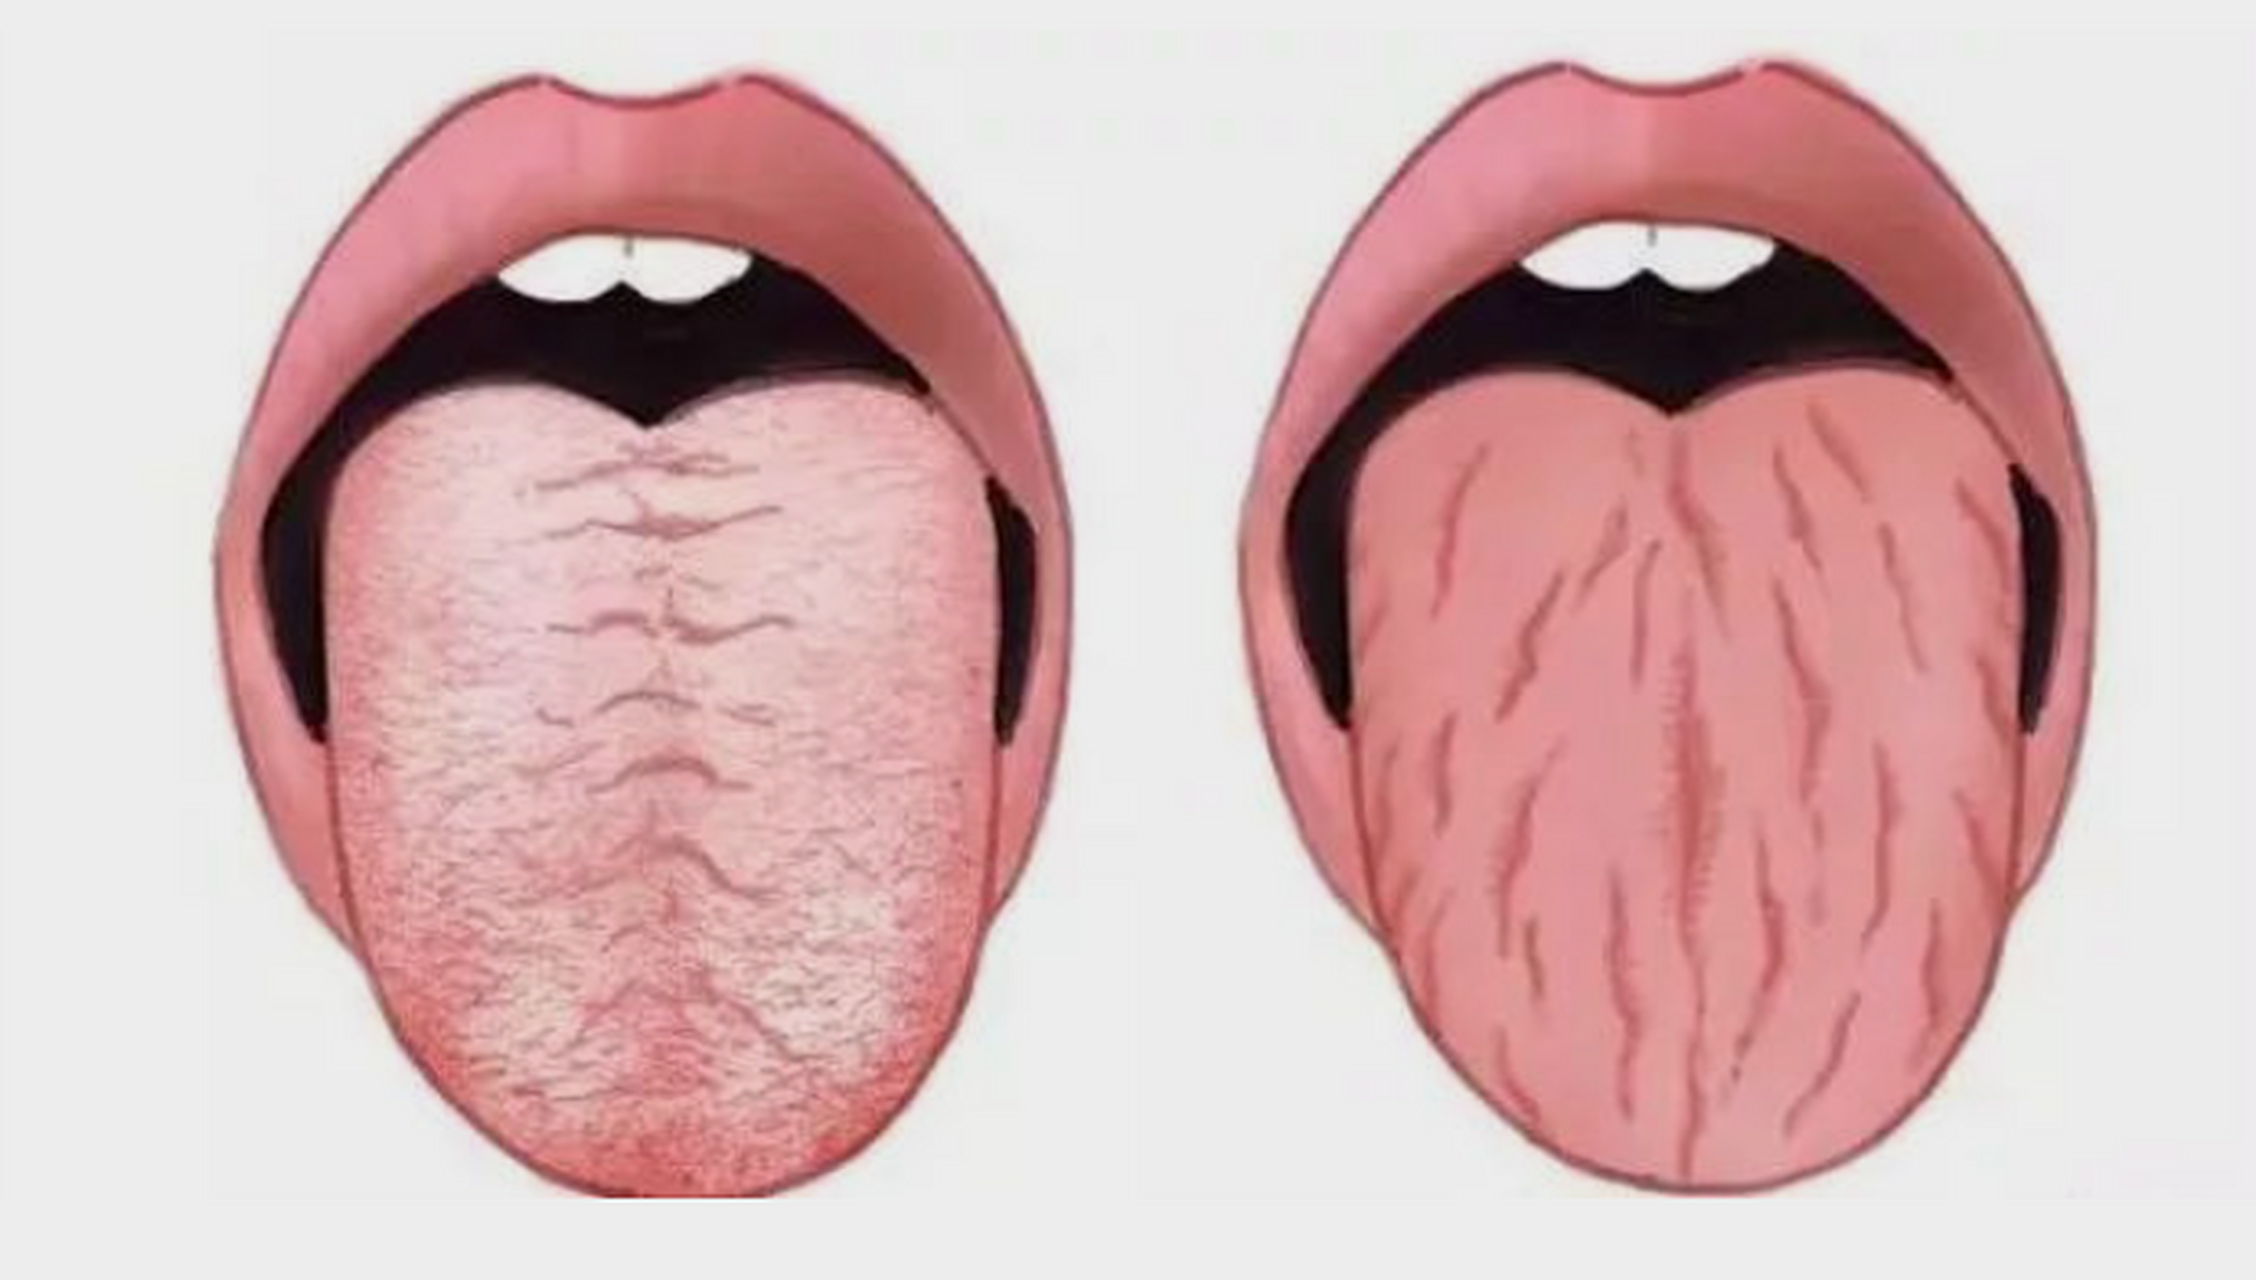 有的人舌头两边有一圈牙齿印,而且舌质淡苔白,舌体胖大,这都是脾胃